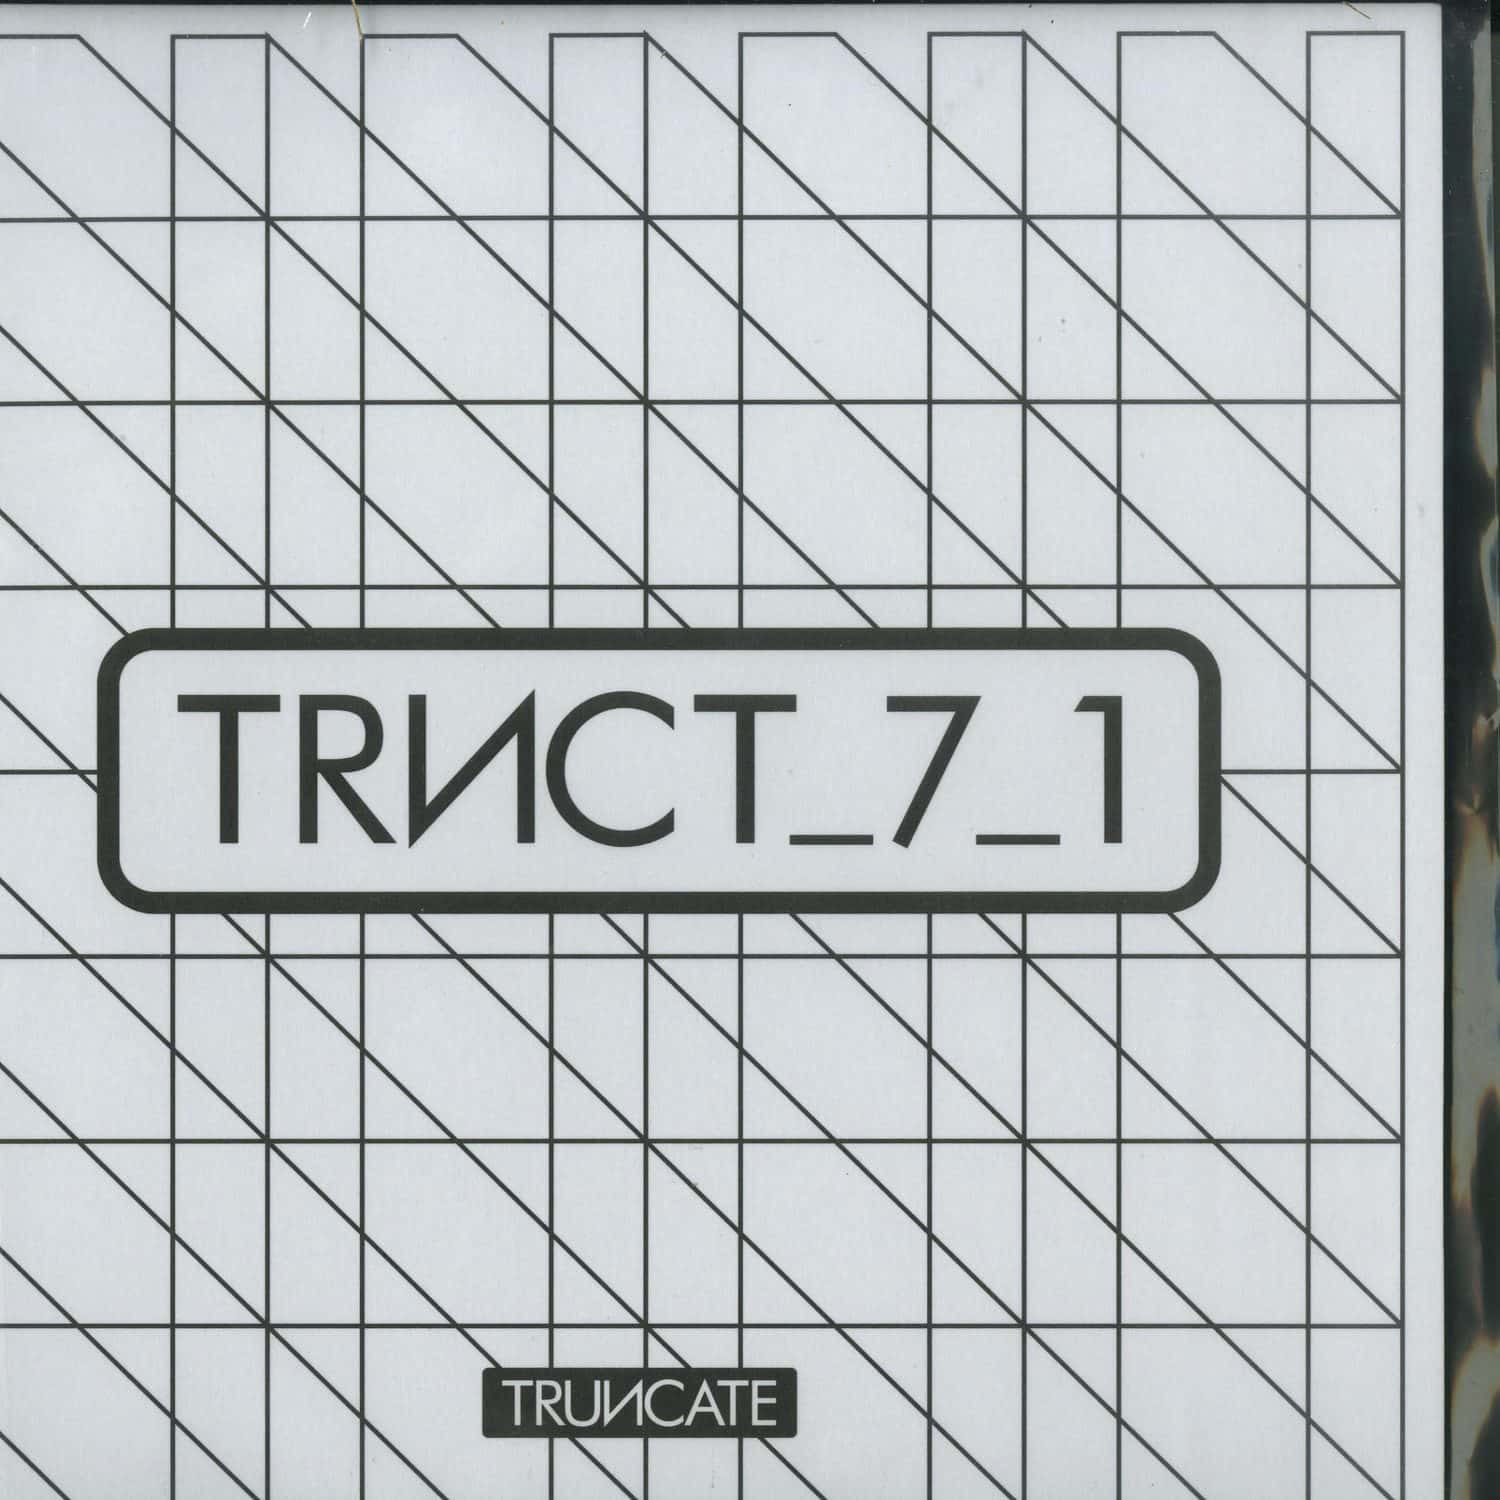 Truncate - _7_1 